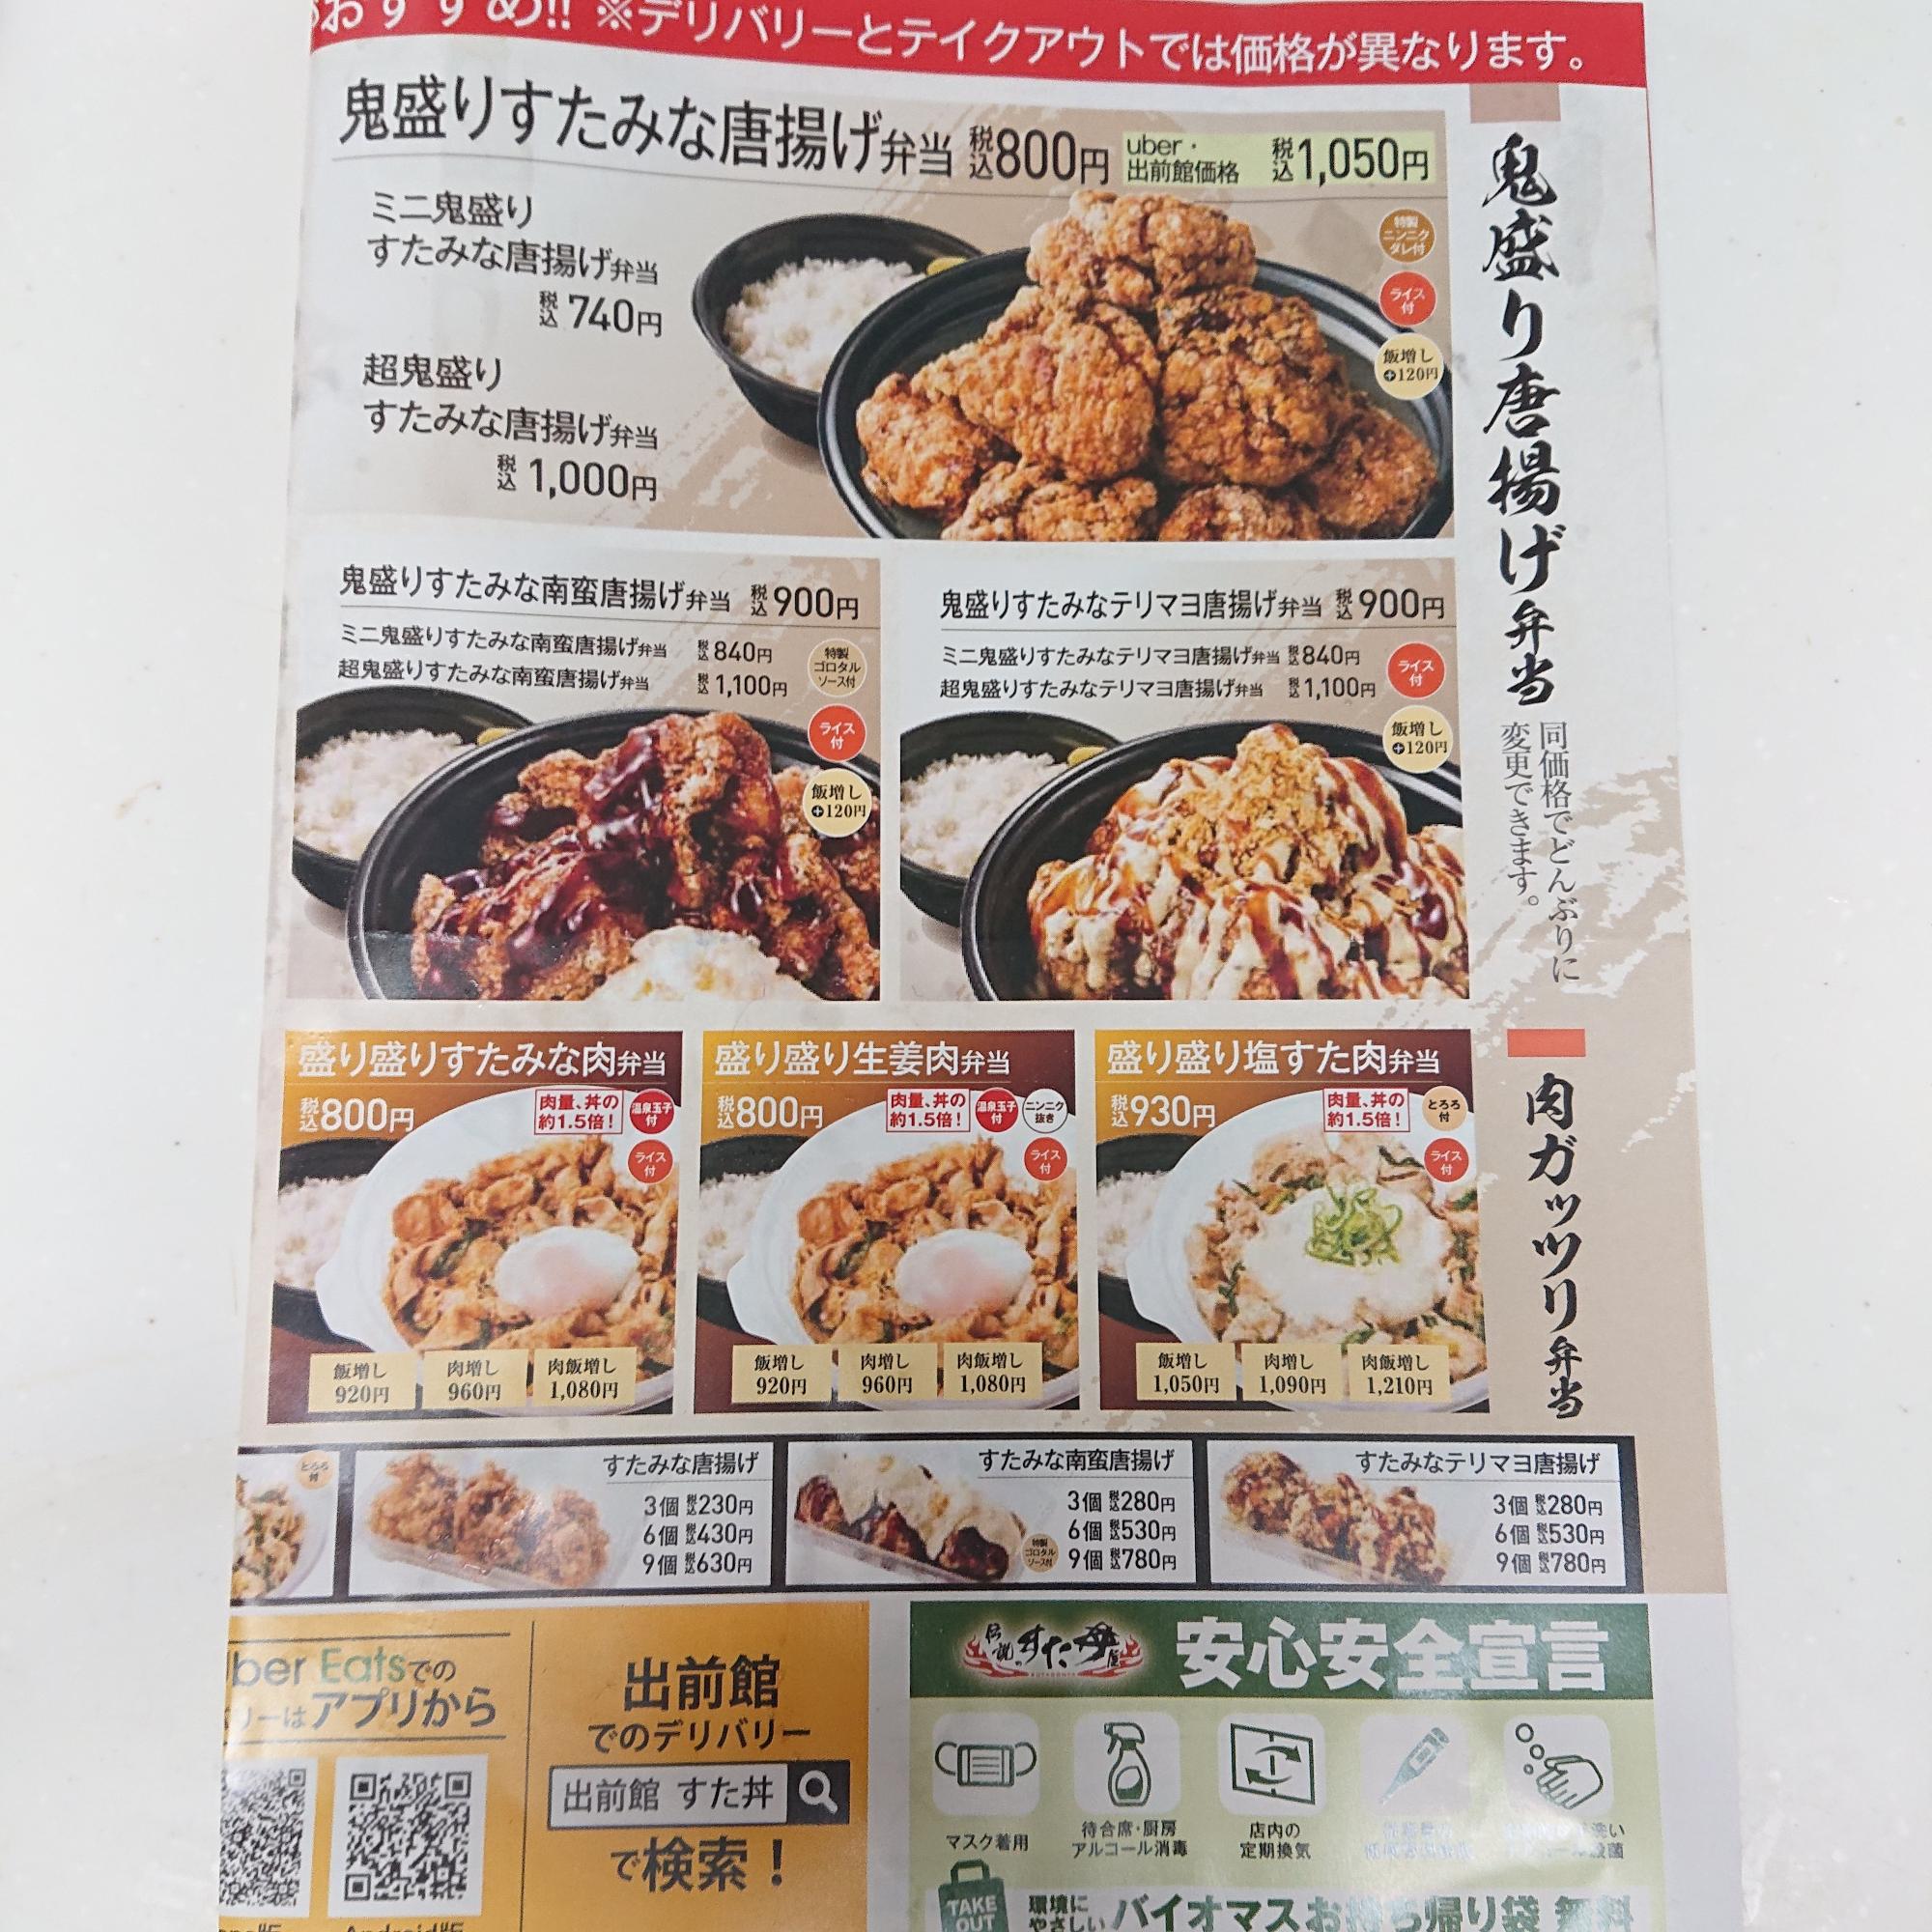 大田区 スタミナとボリューム満点 大森にテイクアウト専門 伝説のすた丼屋 がオープン まりも Yahoo Japan クリエイターズプログラム